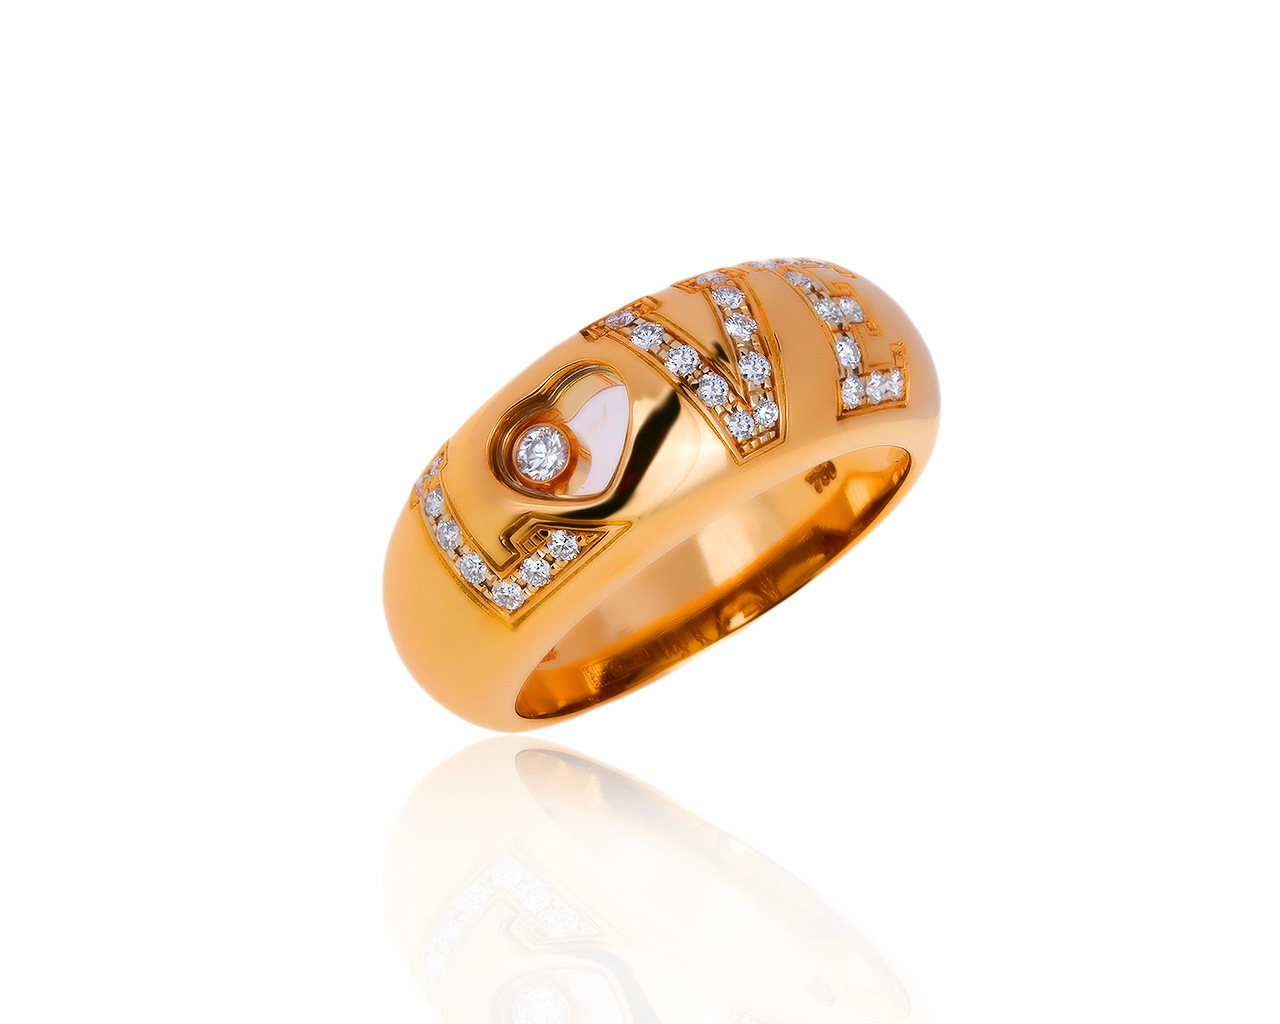 Оригинальное золотое кольцо с бриллиантами 0.29ct Chopard 171219/6